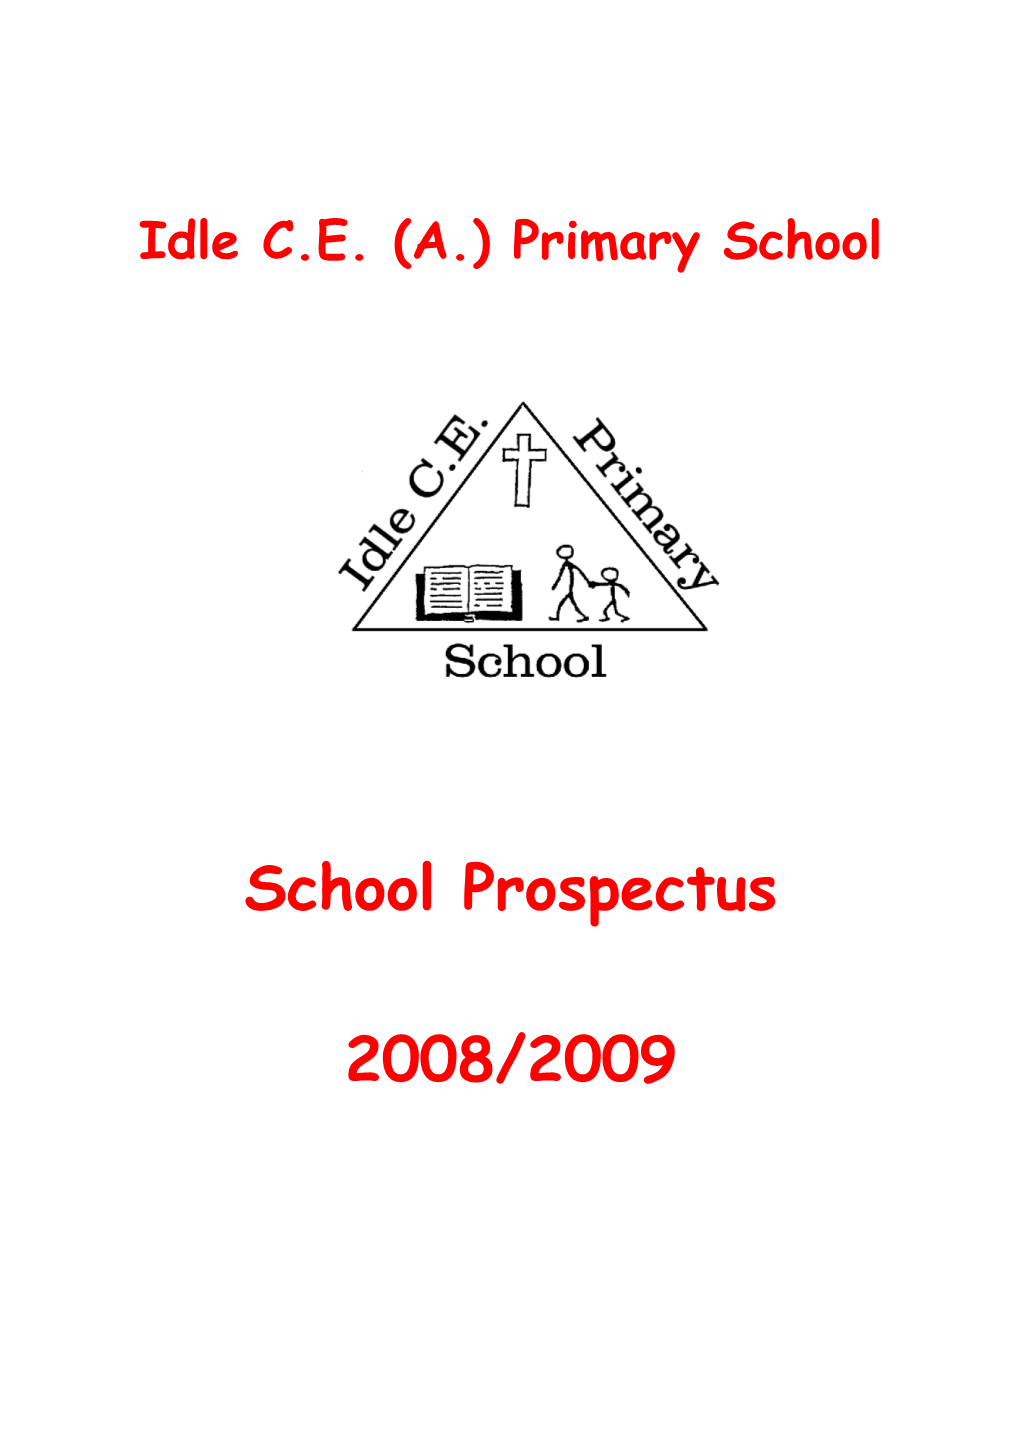 Idle C.E. (A.) Primary School